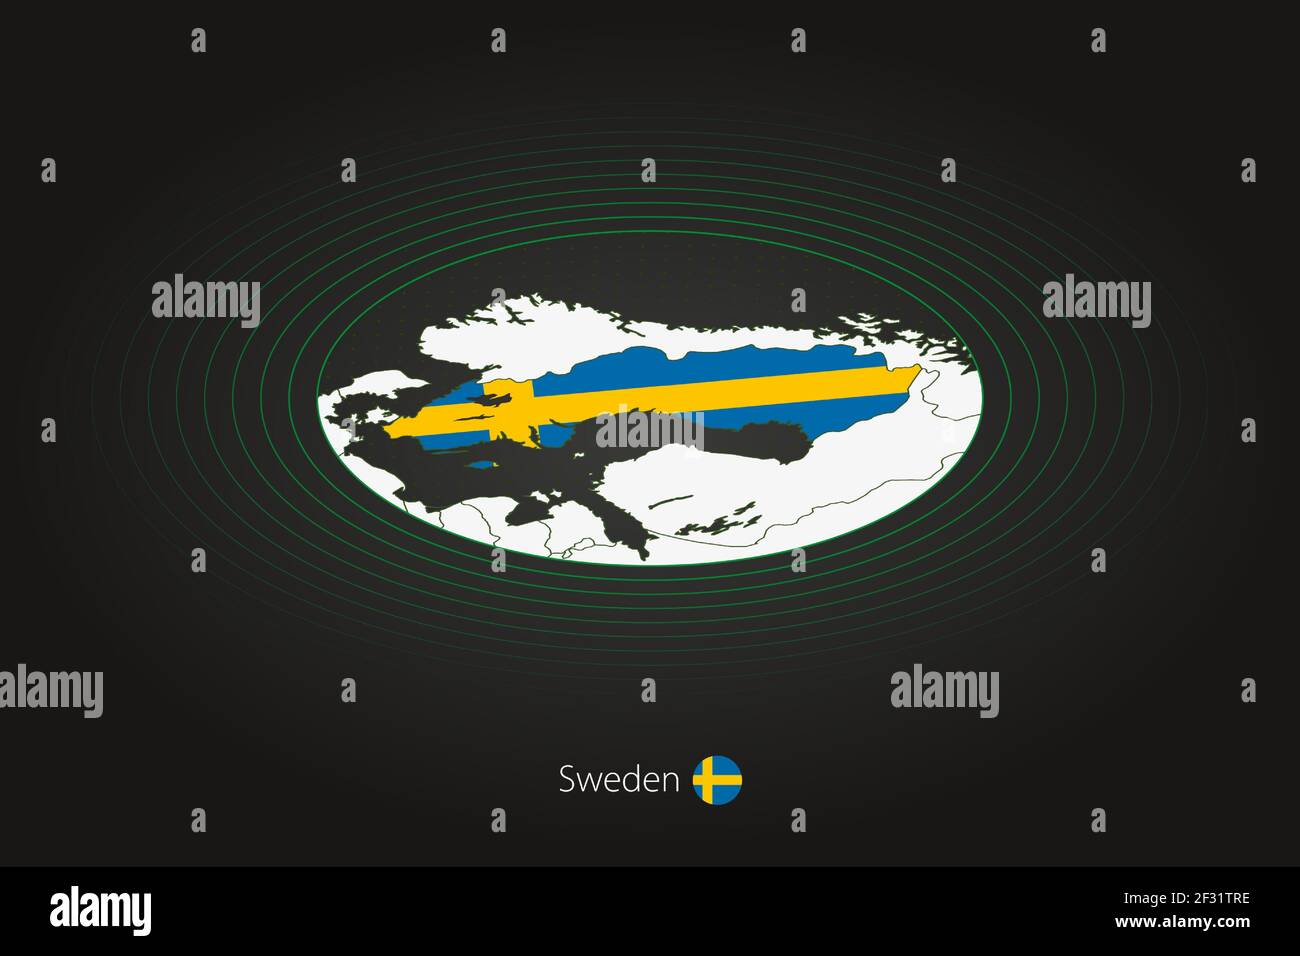 Schwedenkarte in dunkler Farbe, ovale Karte mit Nachbarländern. Vektorkarte und Flagge von Schweden Stock Vektor